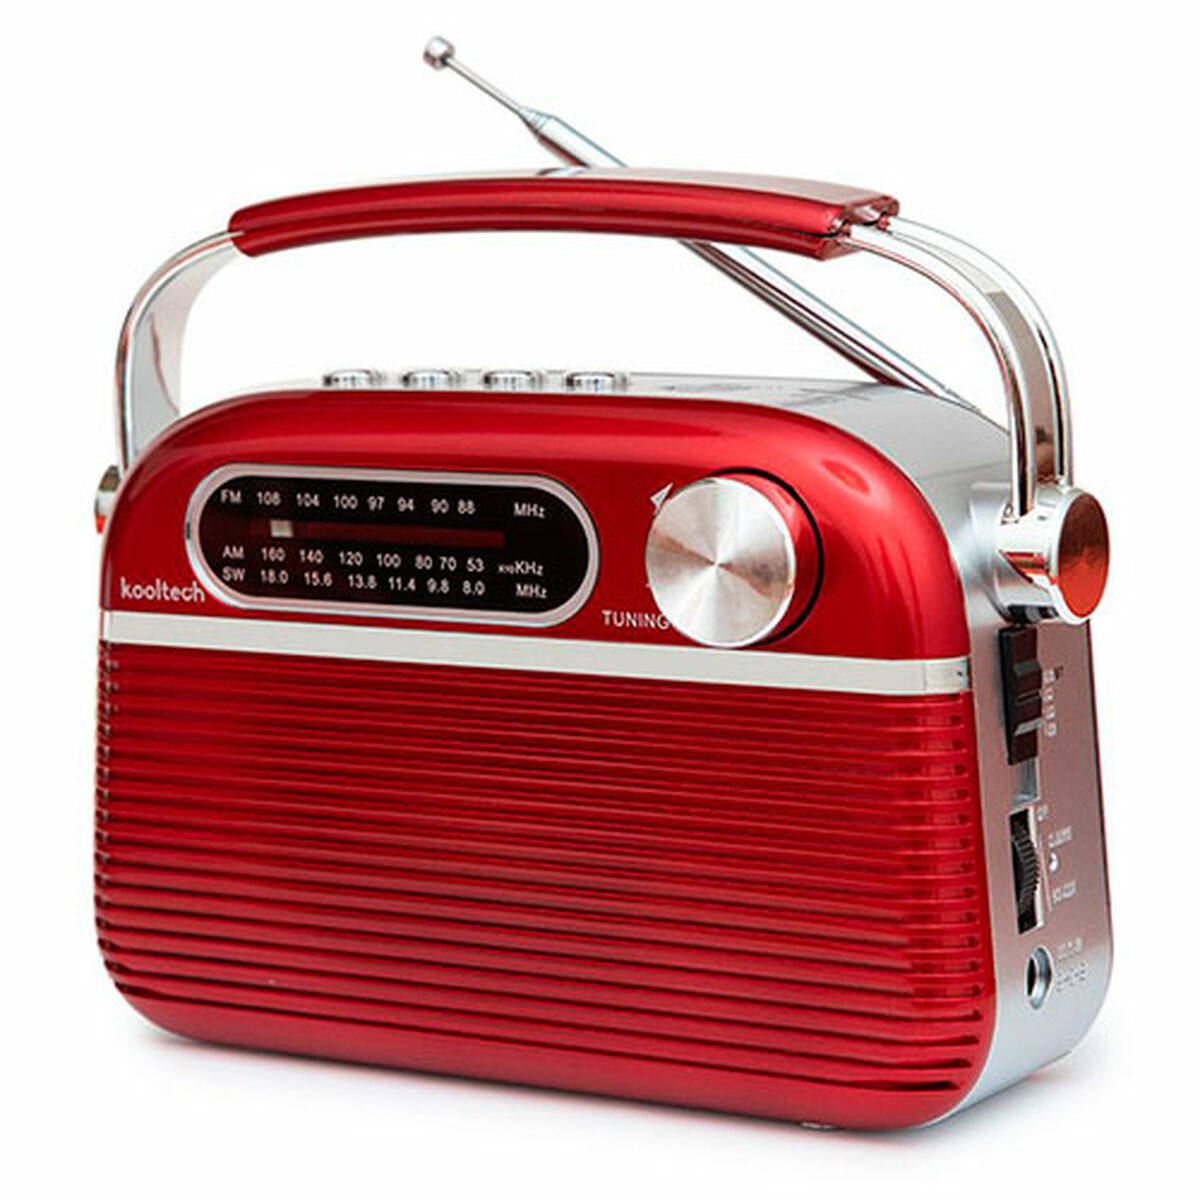 Tragbares Bluetooth-Radio von Kooltech, Vintage-Rot